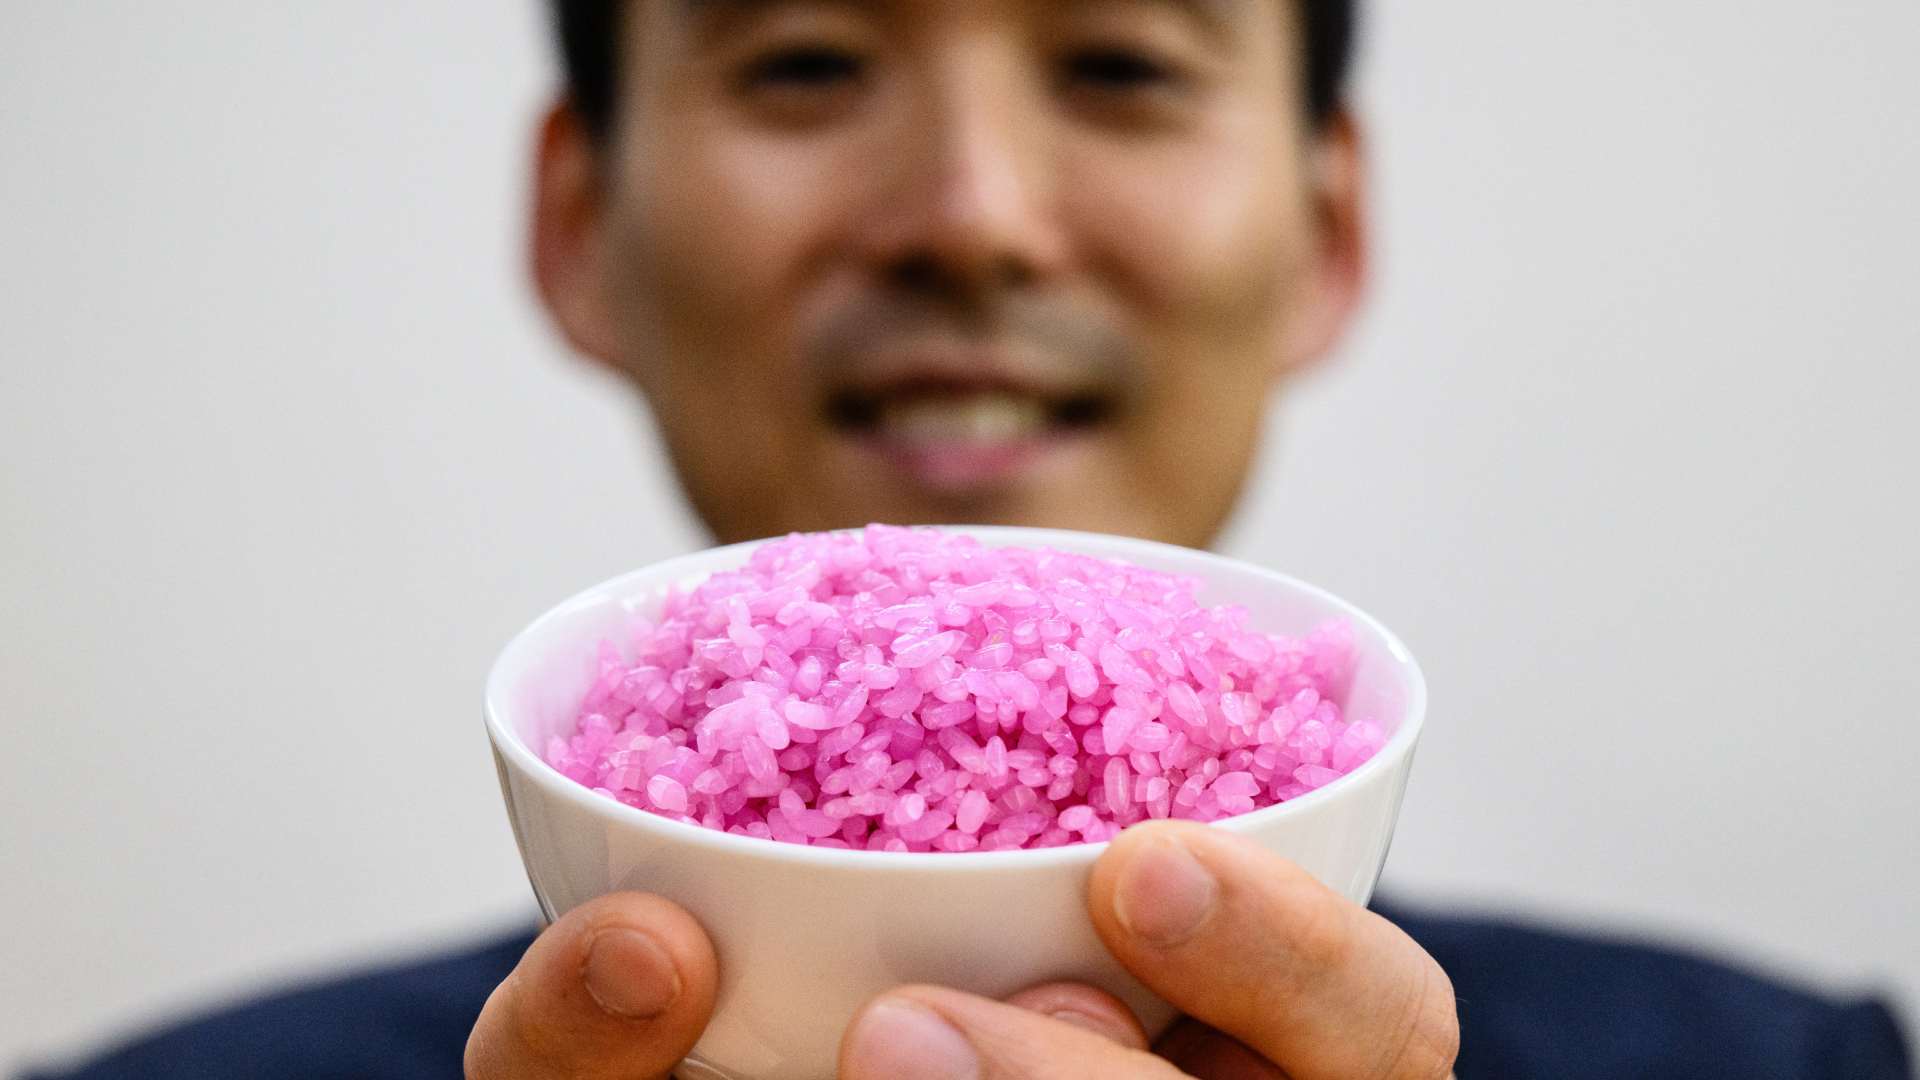 Científicos surcoreanos crean "arroz carnoso", ¿lo probarías??